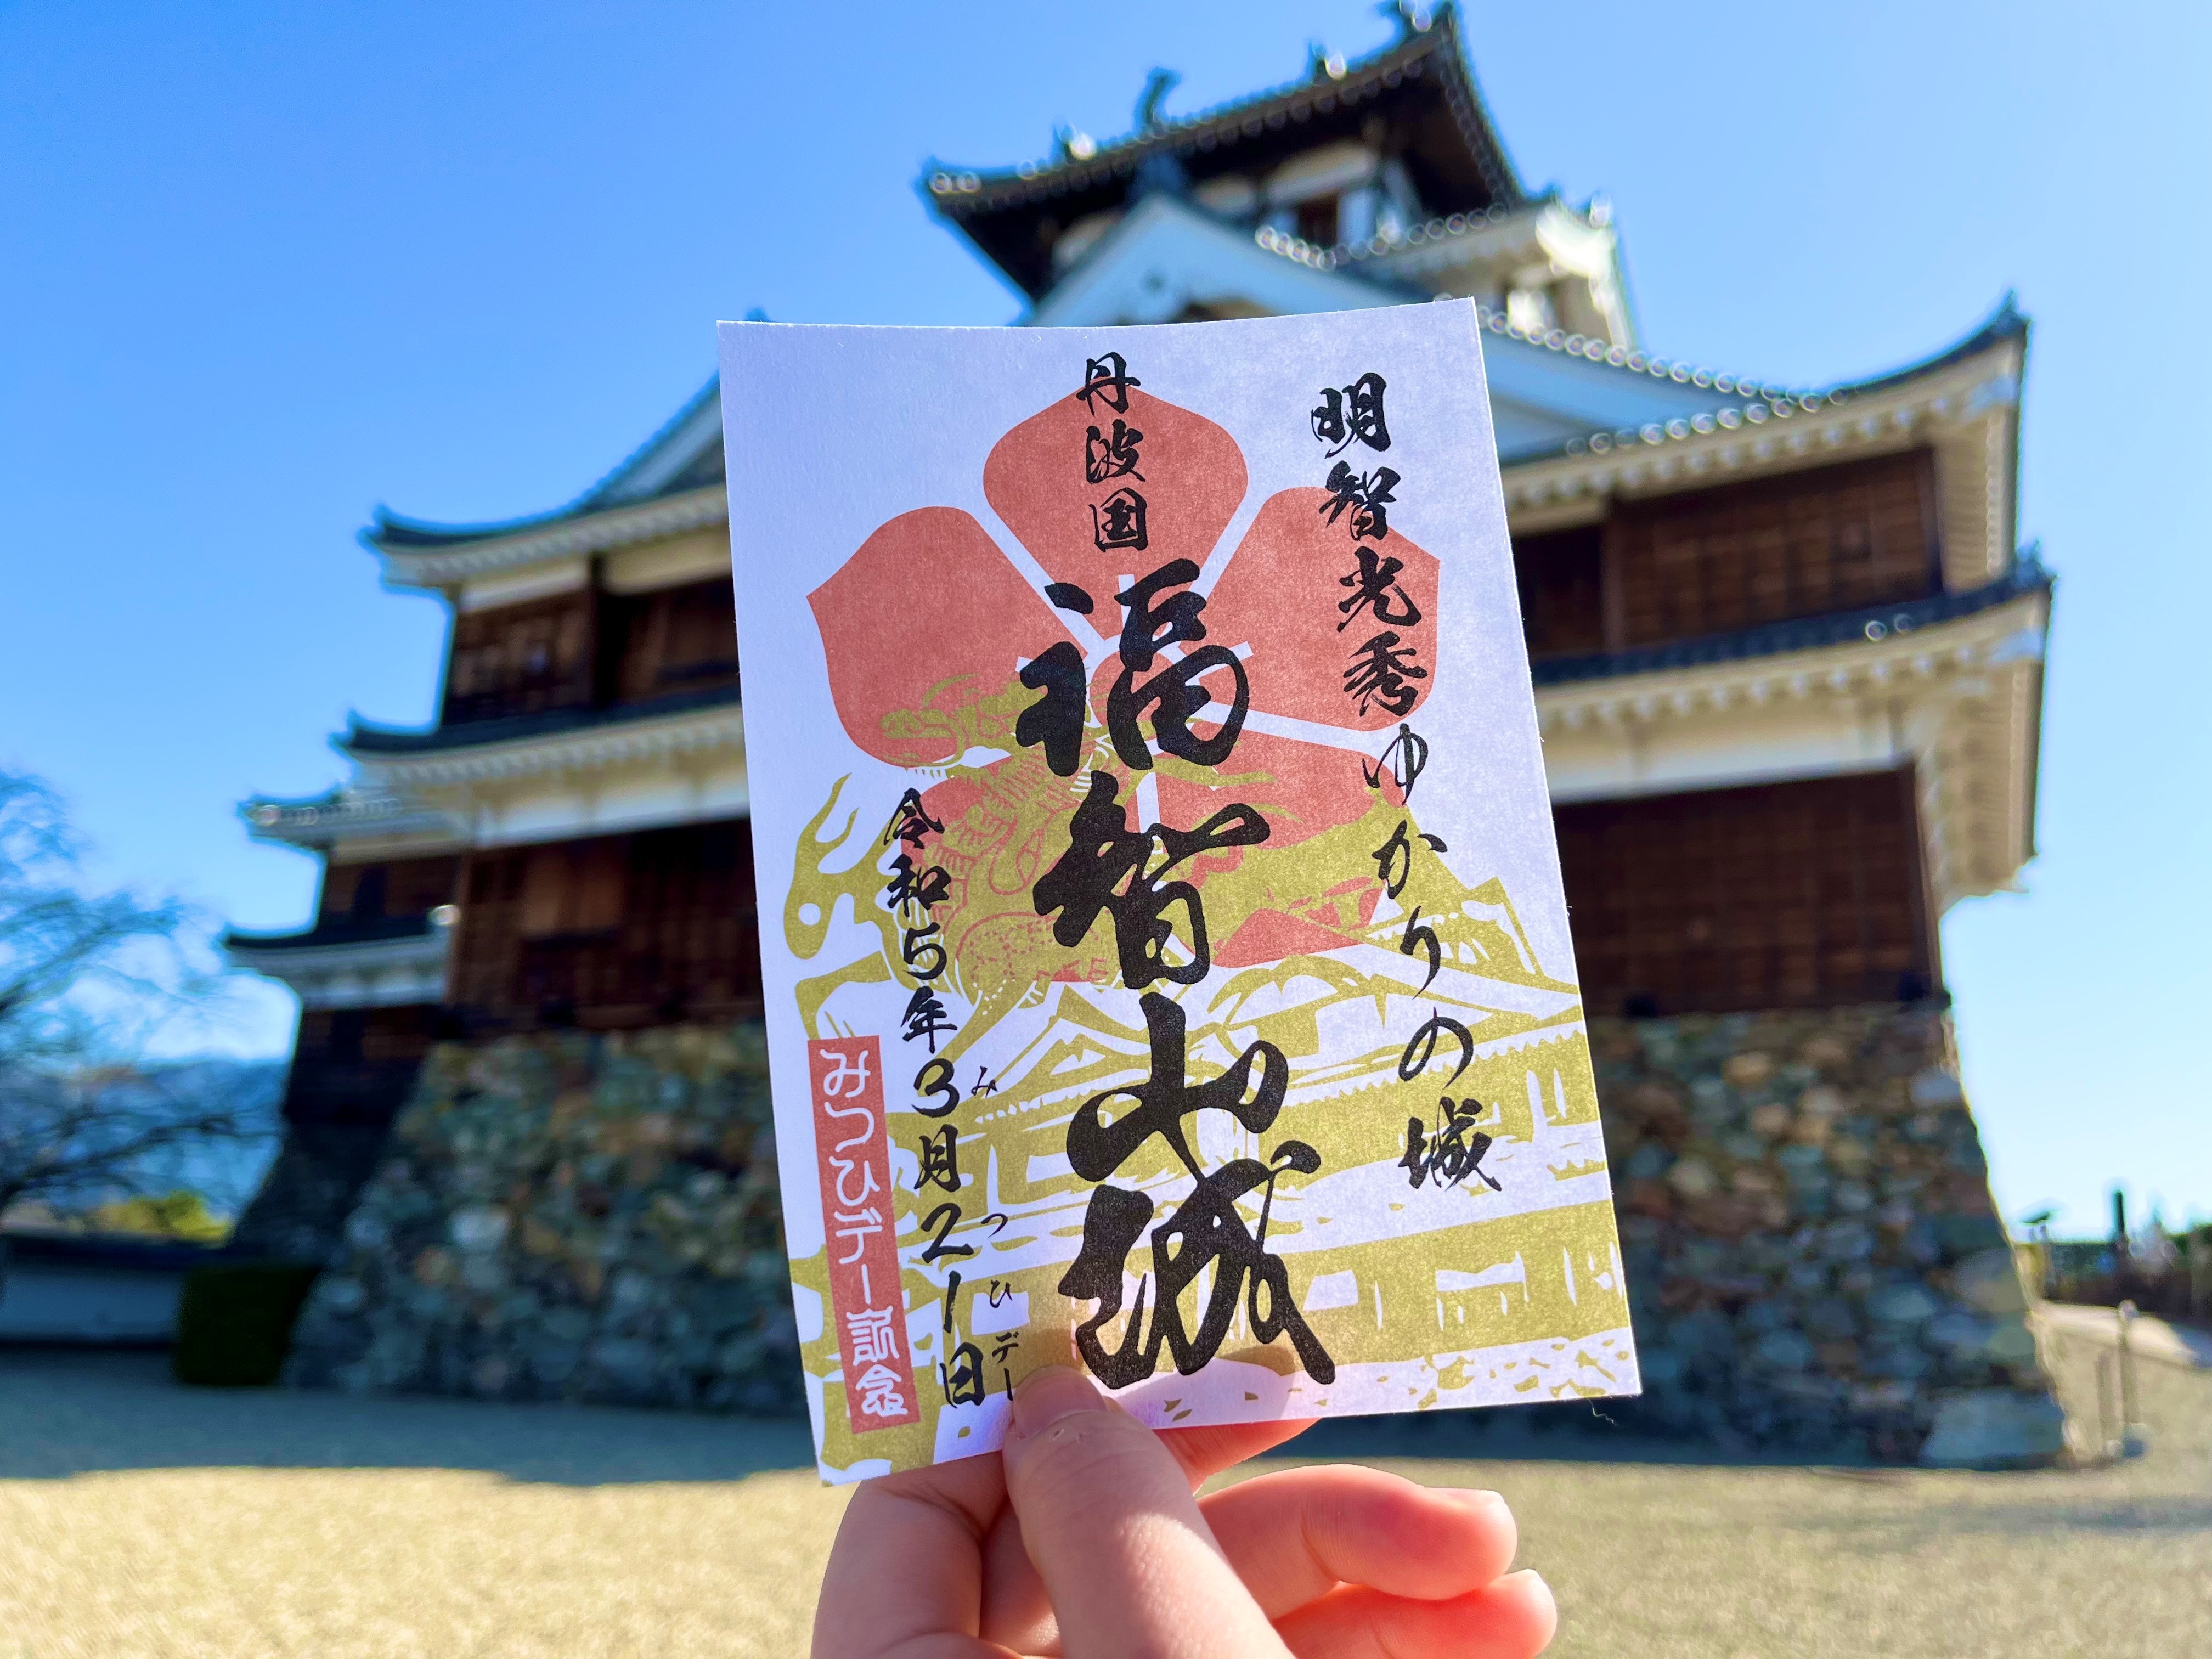 3月21日は「みつひデー」福知山ファンクラブ会員限定で「記念御城 